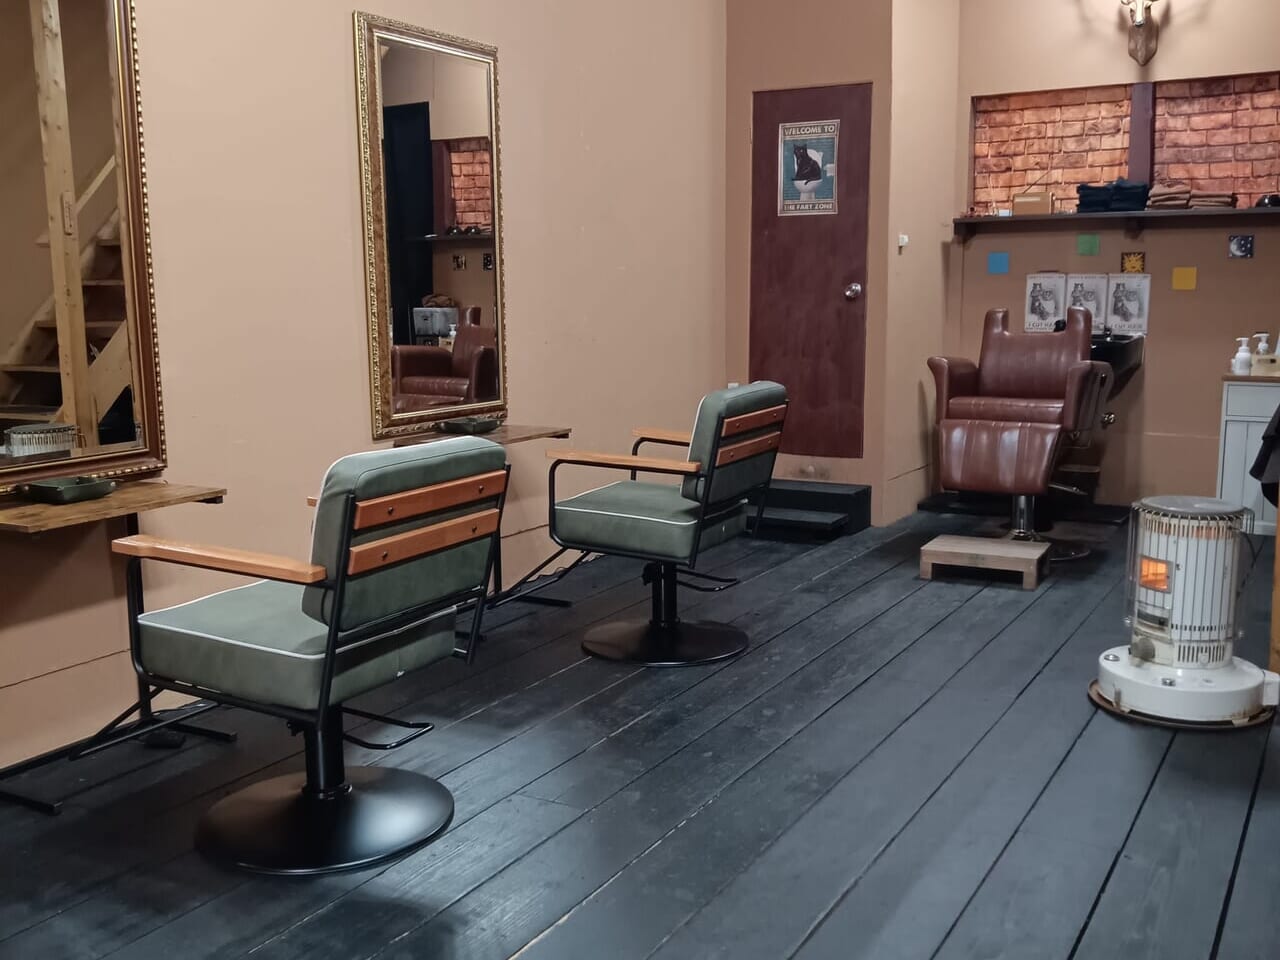 井口堂に新しくオープンした美容室「hair salon PAS DE DEUX(パ・ド・ドゥ)」